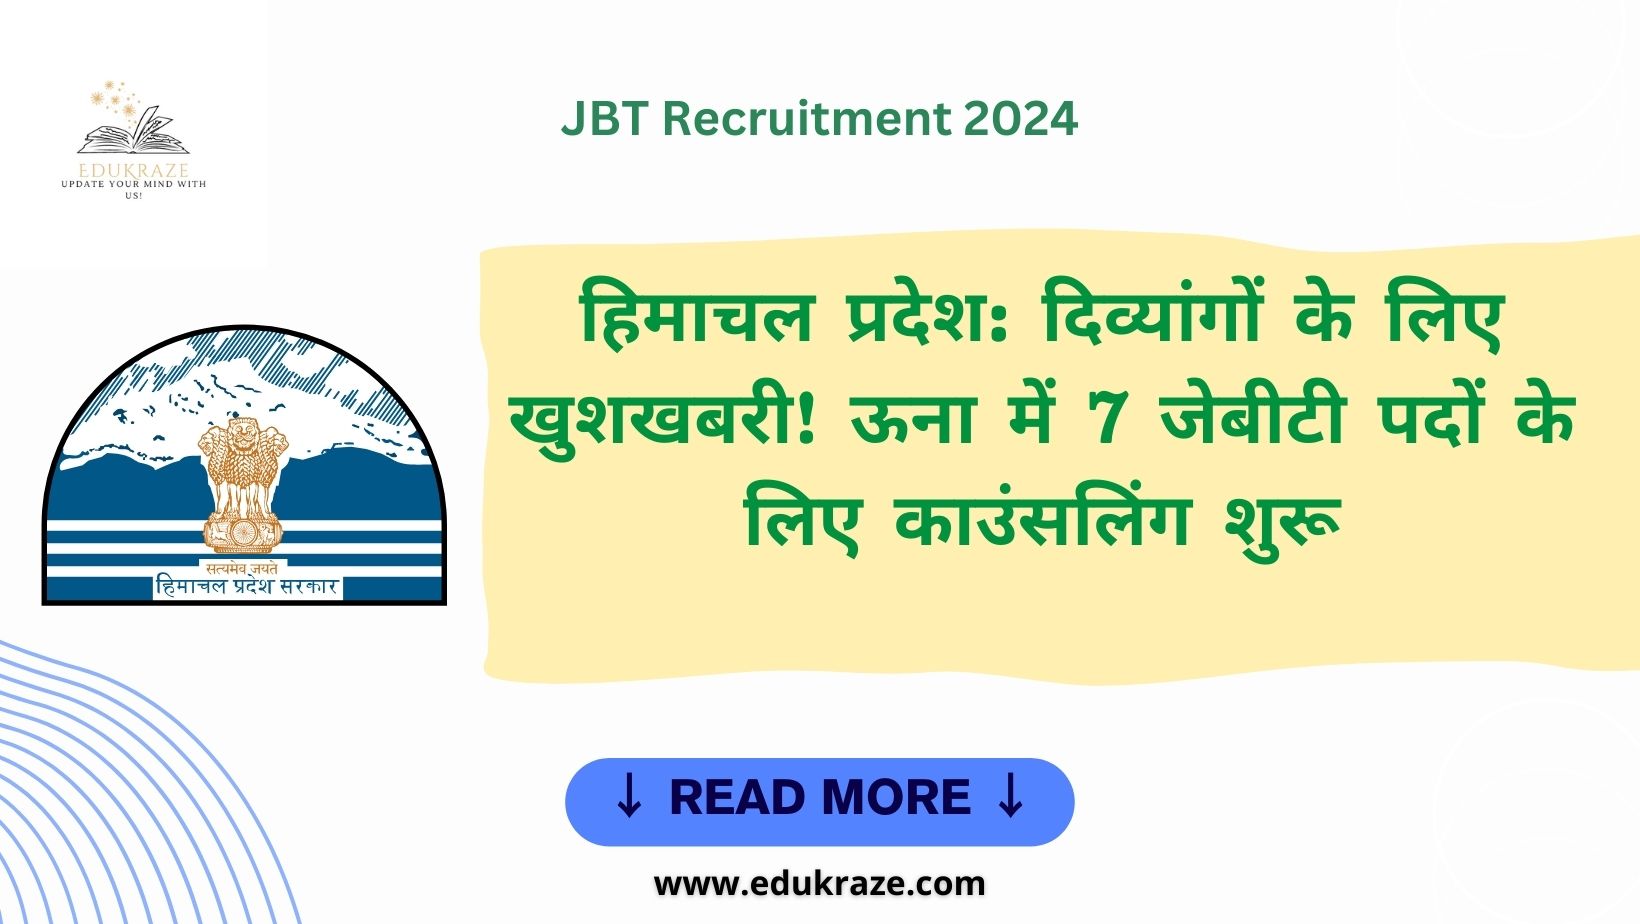 हिमाचल प्रदेश: दिव्यांगों के लिए JBT भर्ती